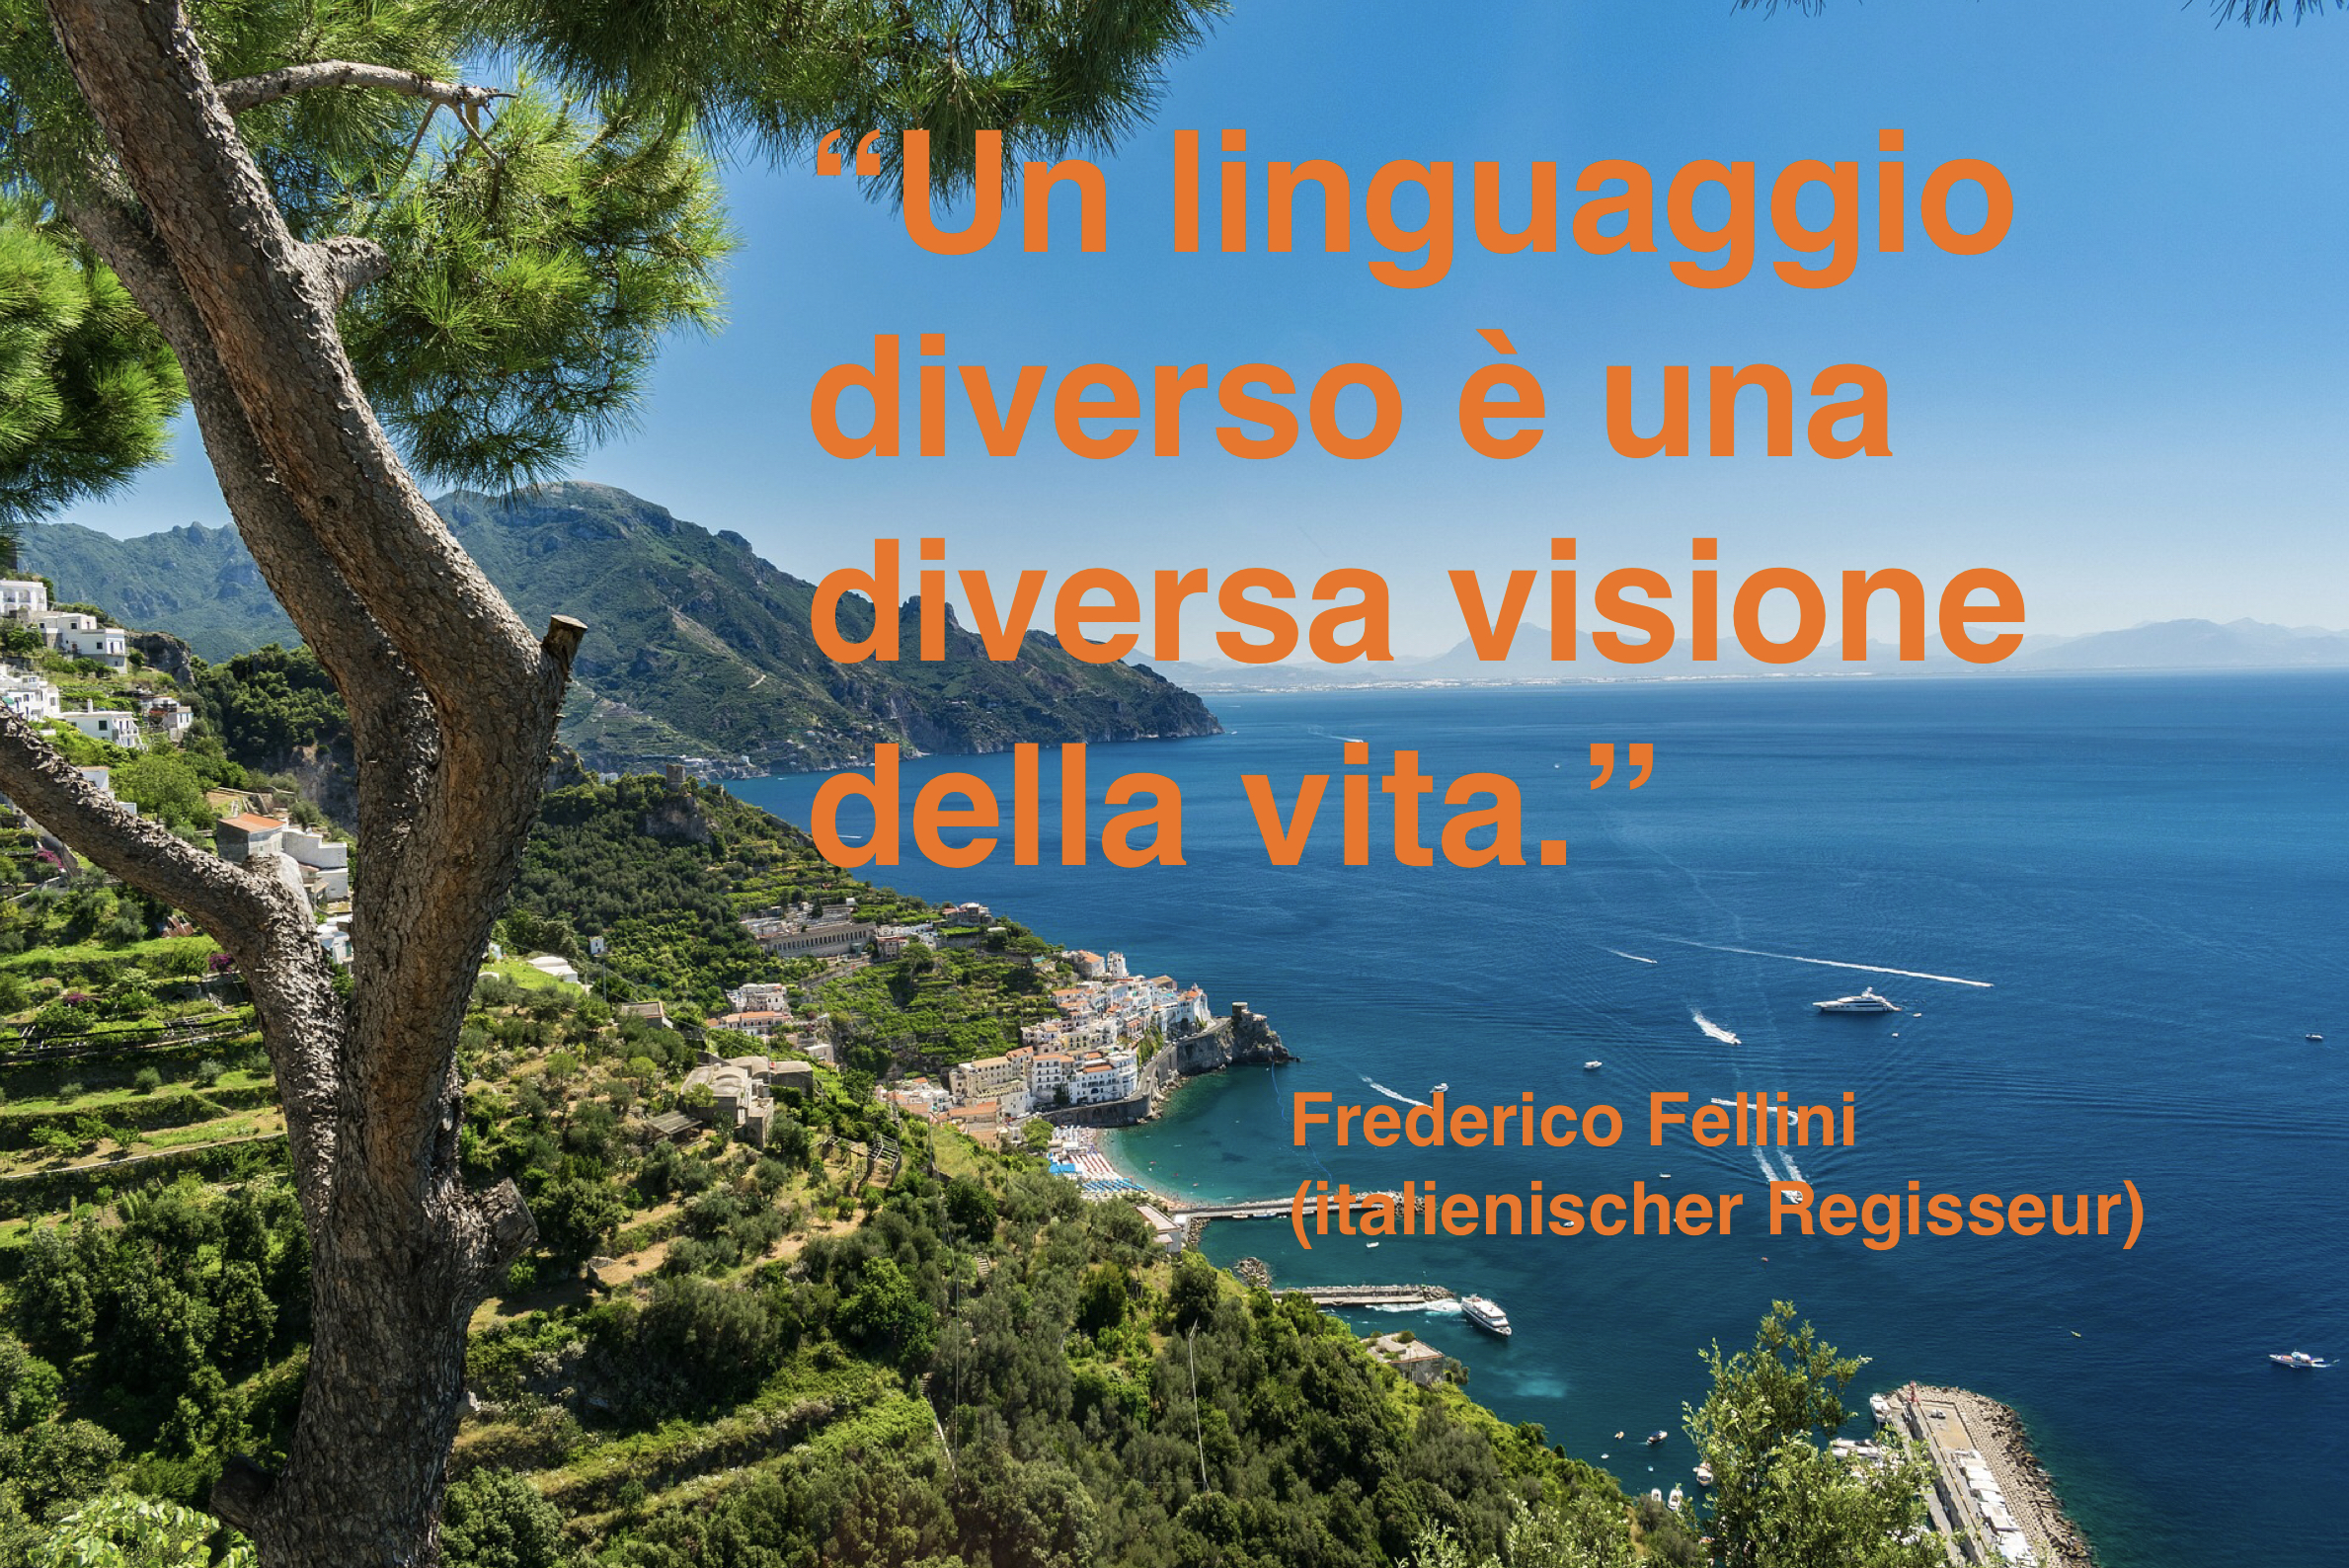 “Un linguaggio diverso è una diversa visione della vita.” -  Frederico Fellini (italienischer Regisseur)